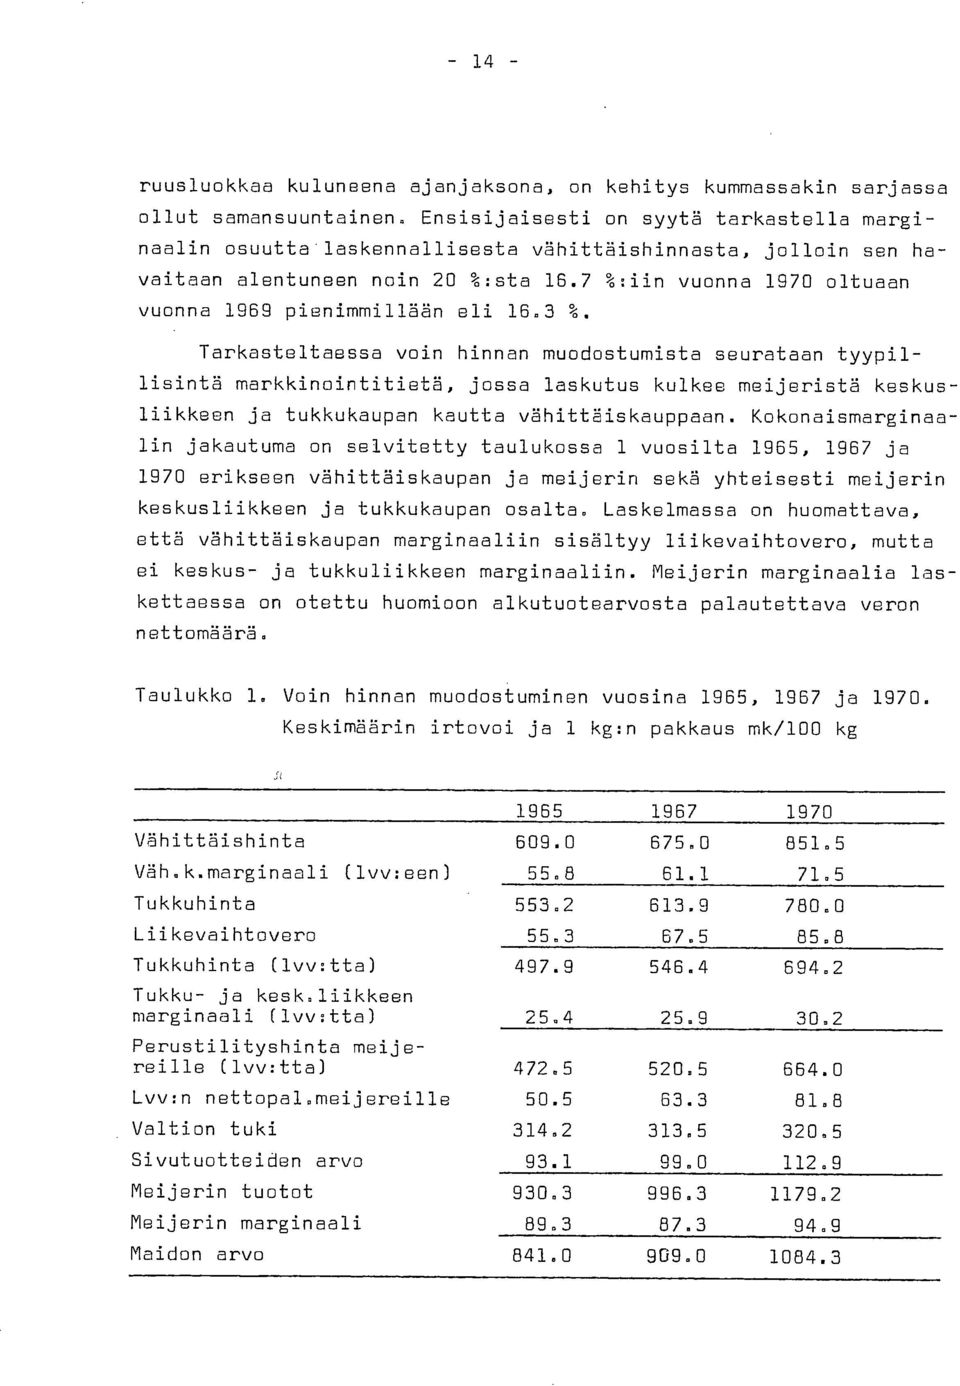 7 %:iin vuonna 1970 oltuaan vuonna 1969 pienimmillään eli 16.